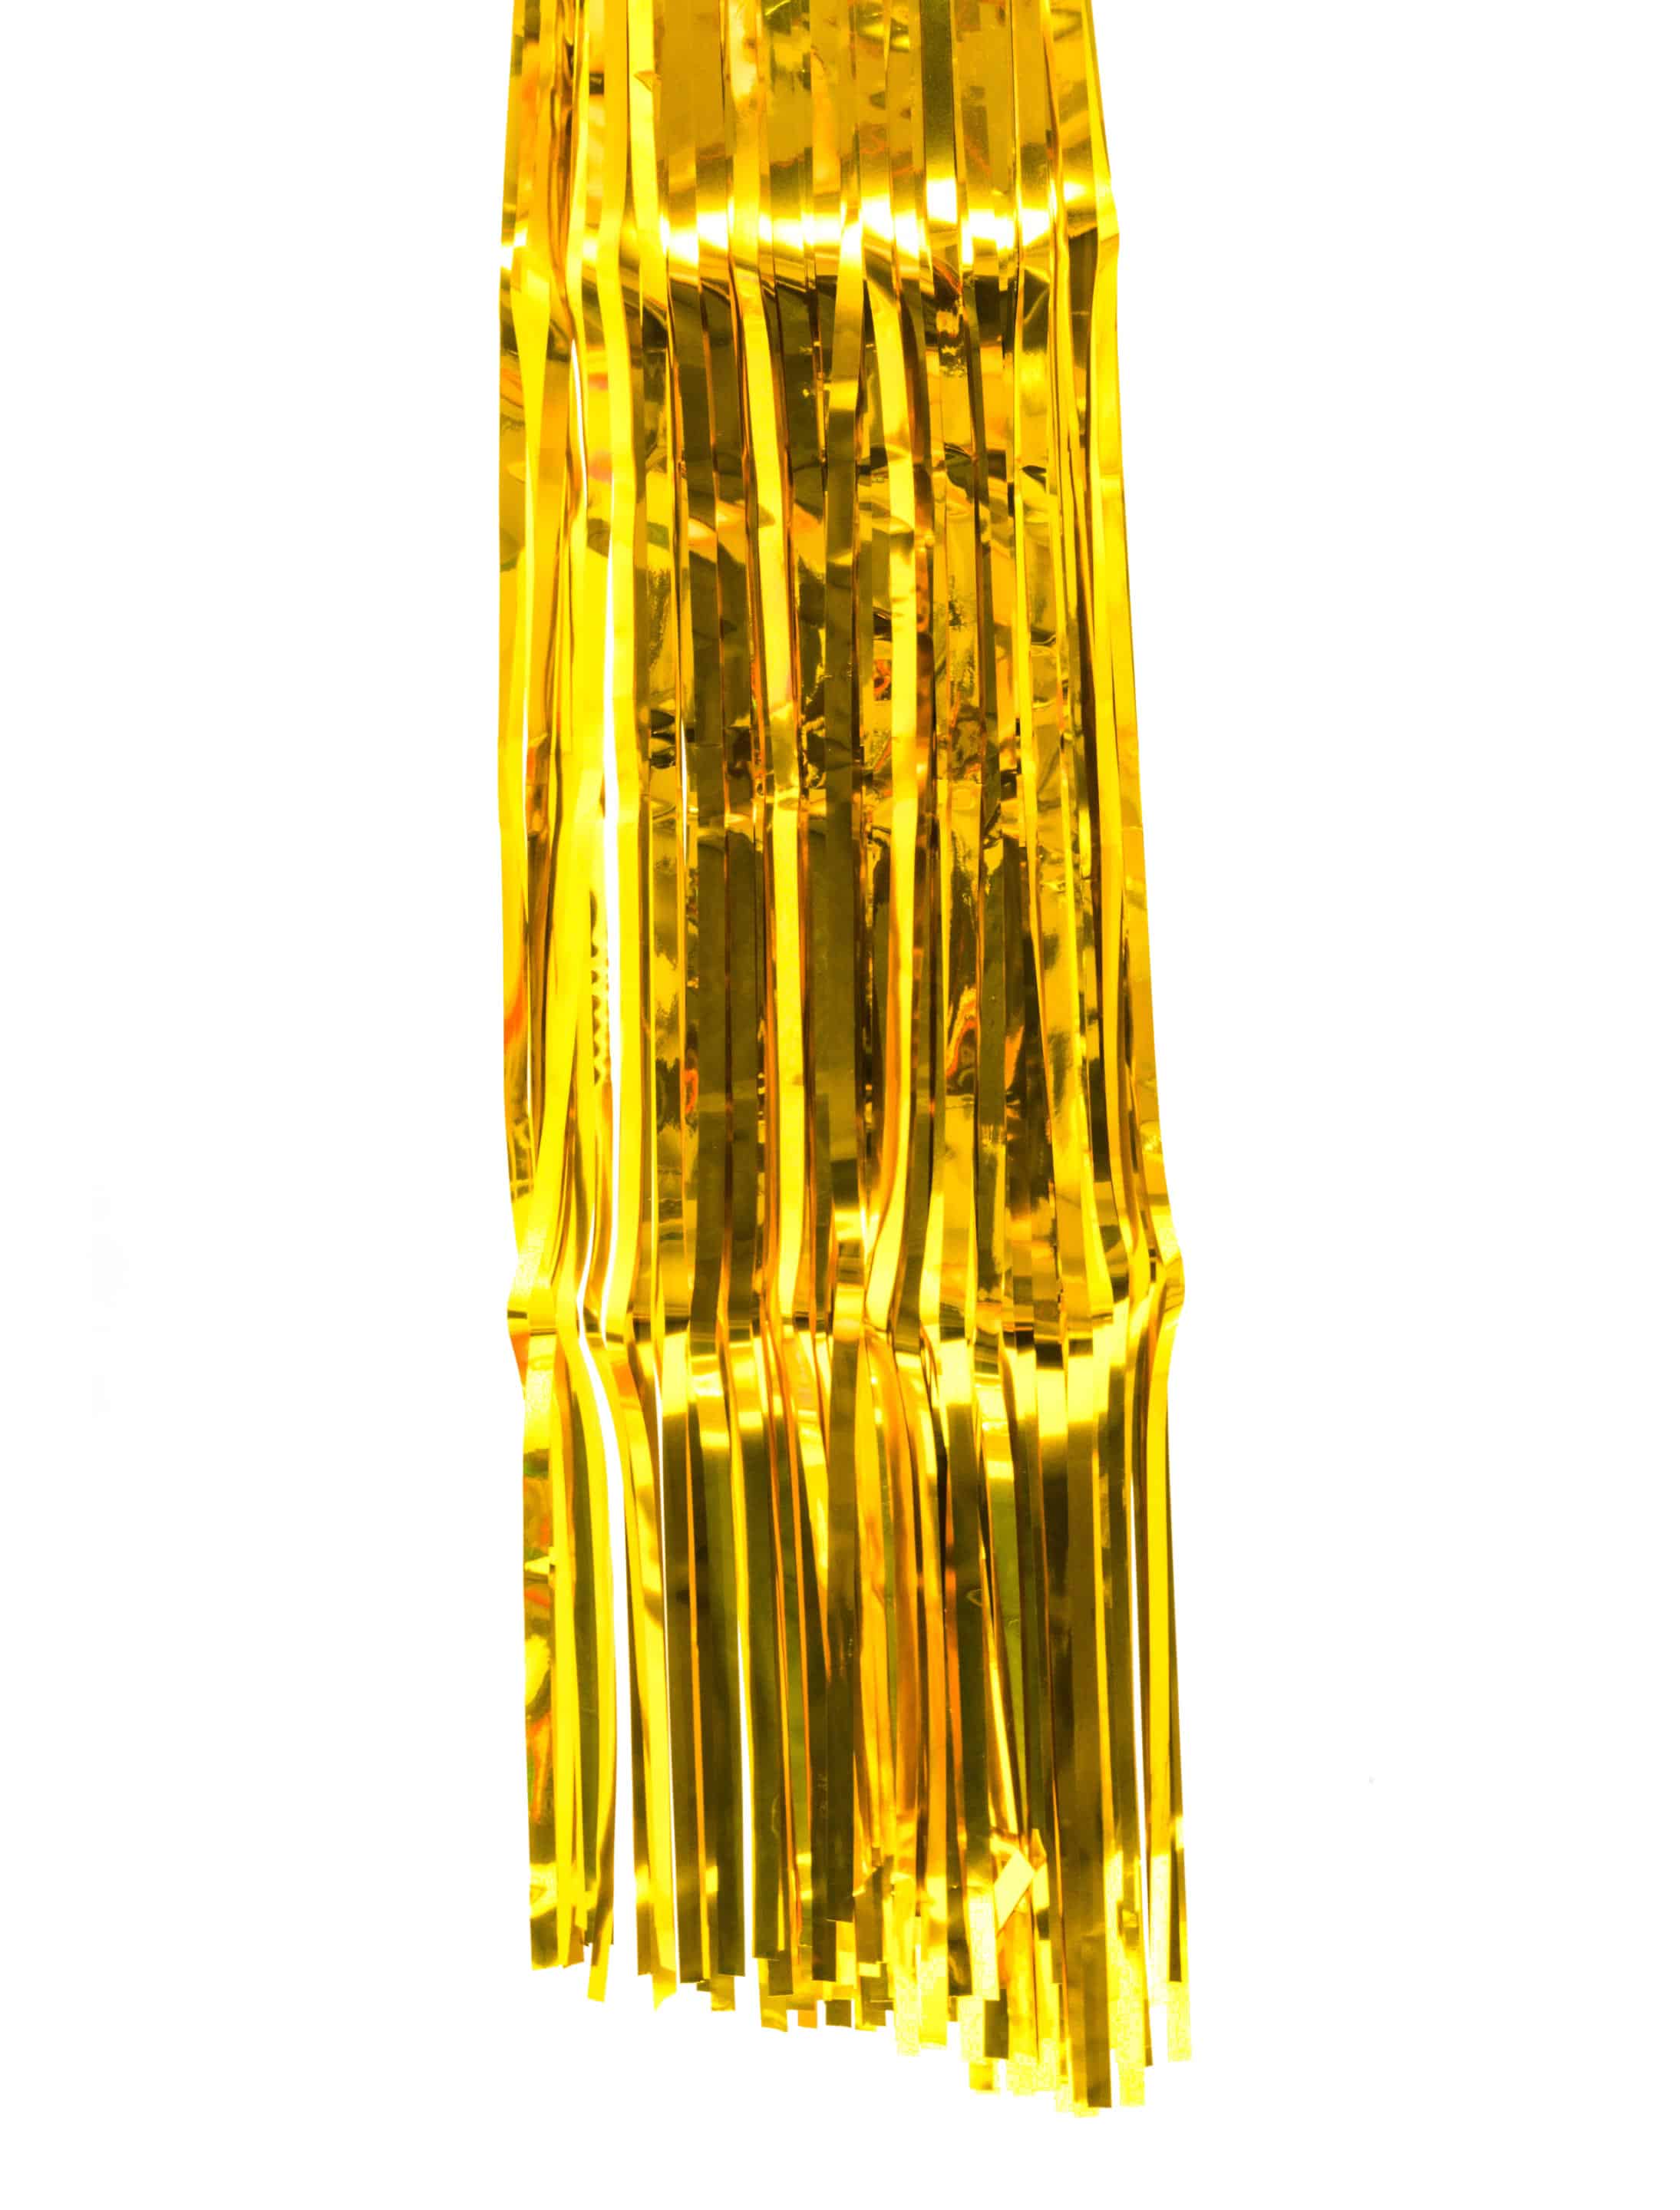 Lamettavorhang metallic gold